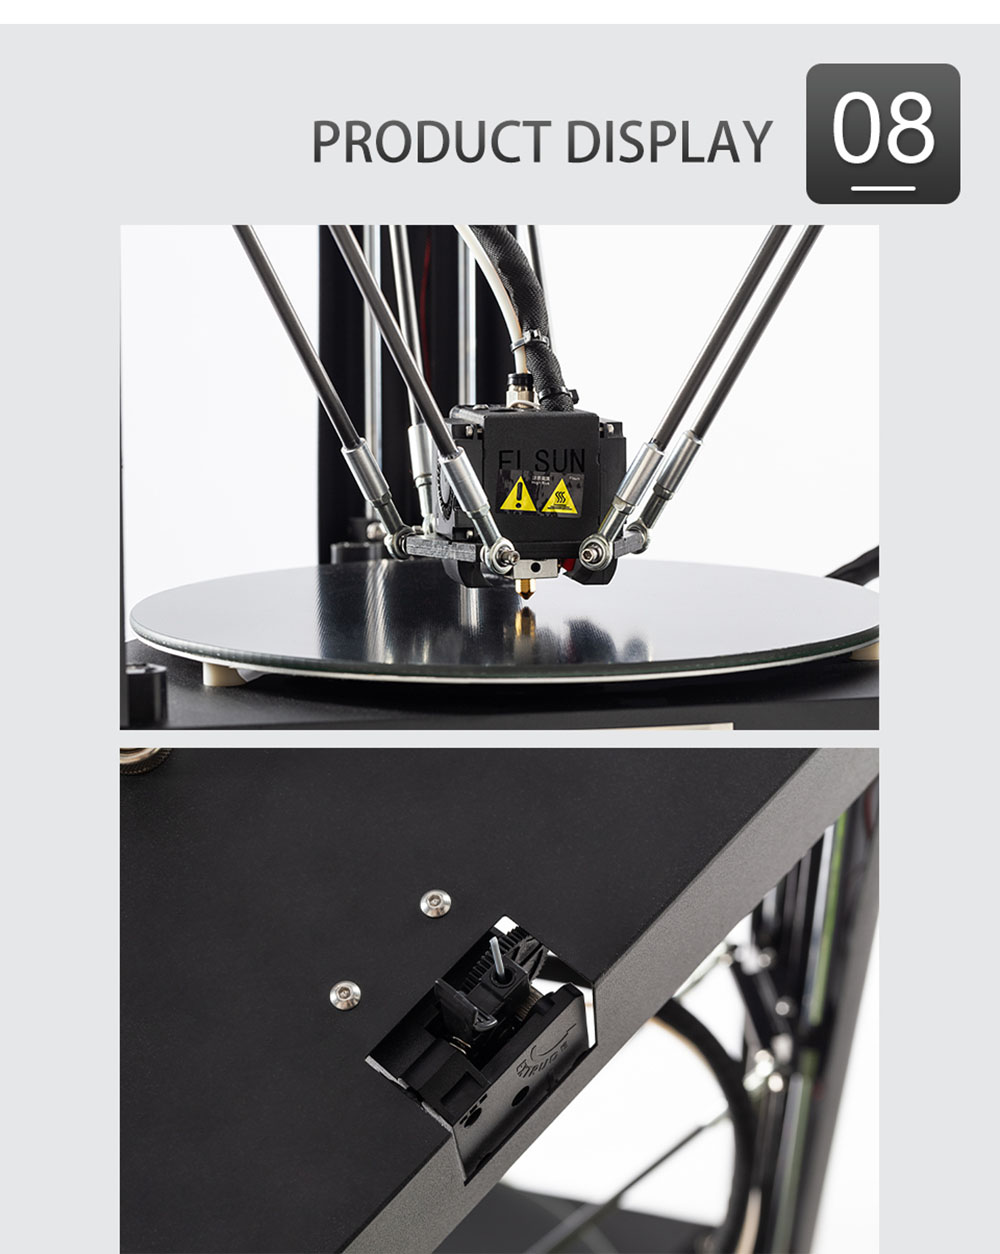 Flsun QQ-S Pro Pre-assembled Delta 3D เครื่องพิมพ์ปรับระดับอัตโนมัติ Lattice Glass Platform หน้าจอสัมผัส 255X360 มม. ขนาดการพิมพ์